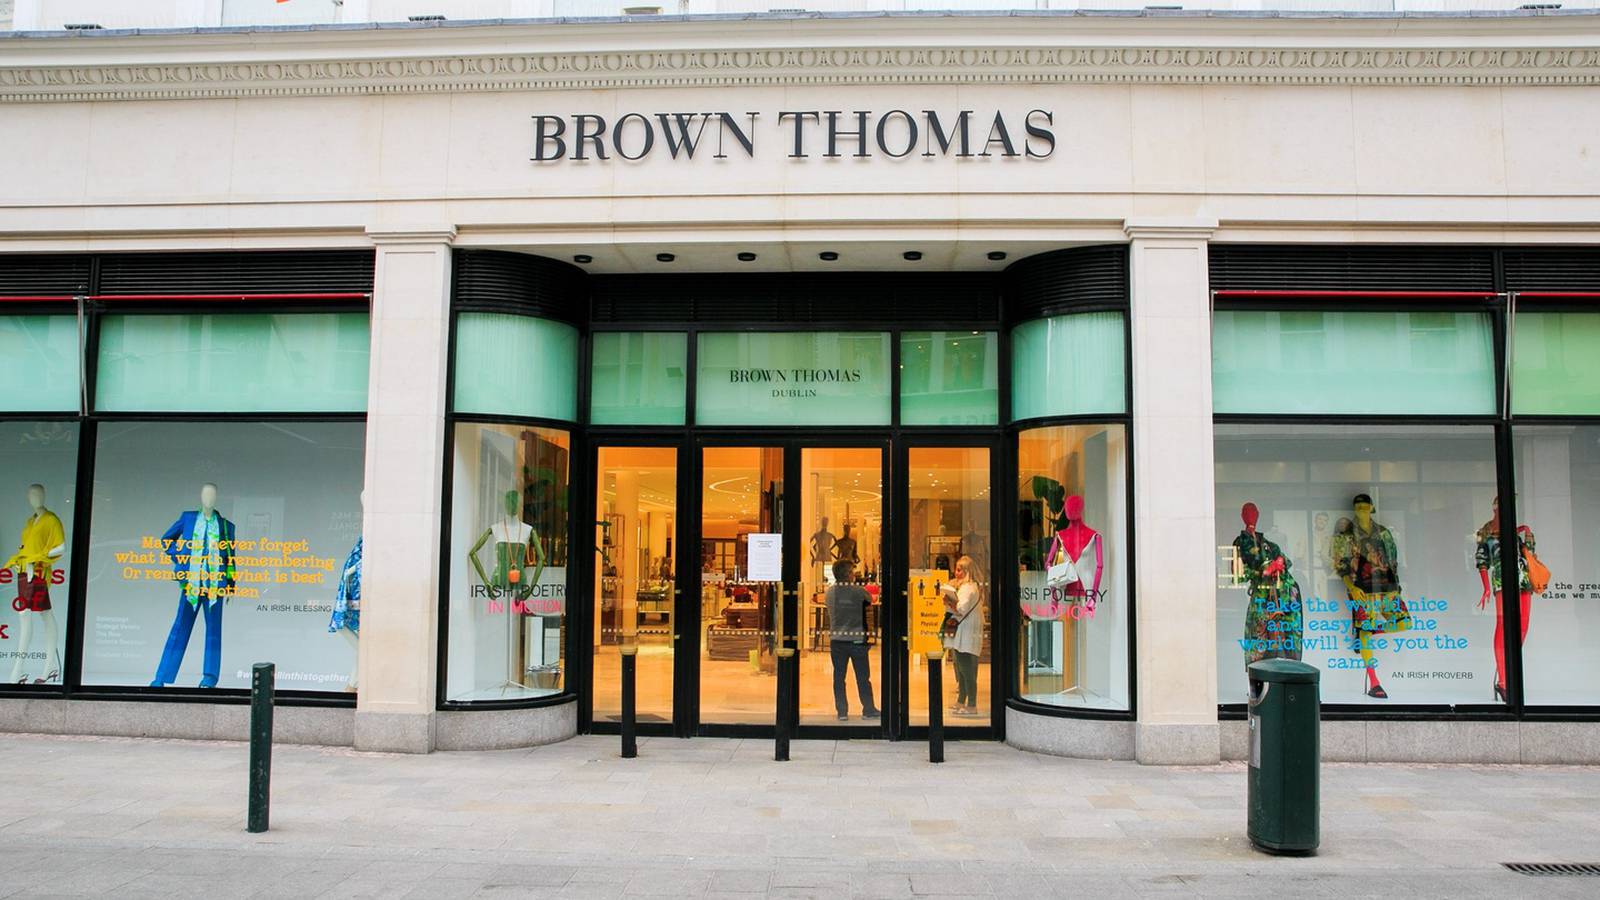 Brown Thomas, luxury Department Store on Grafton Street, Dublin